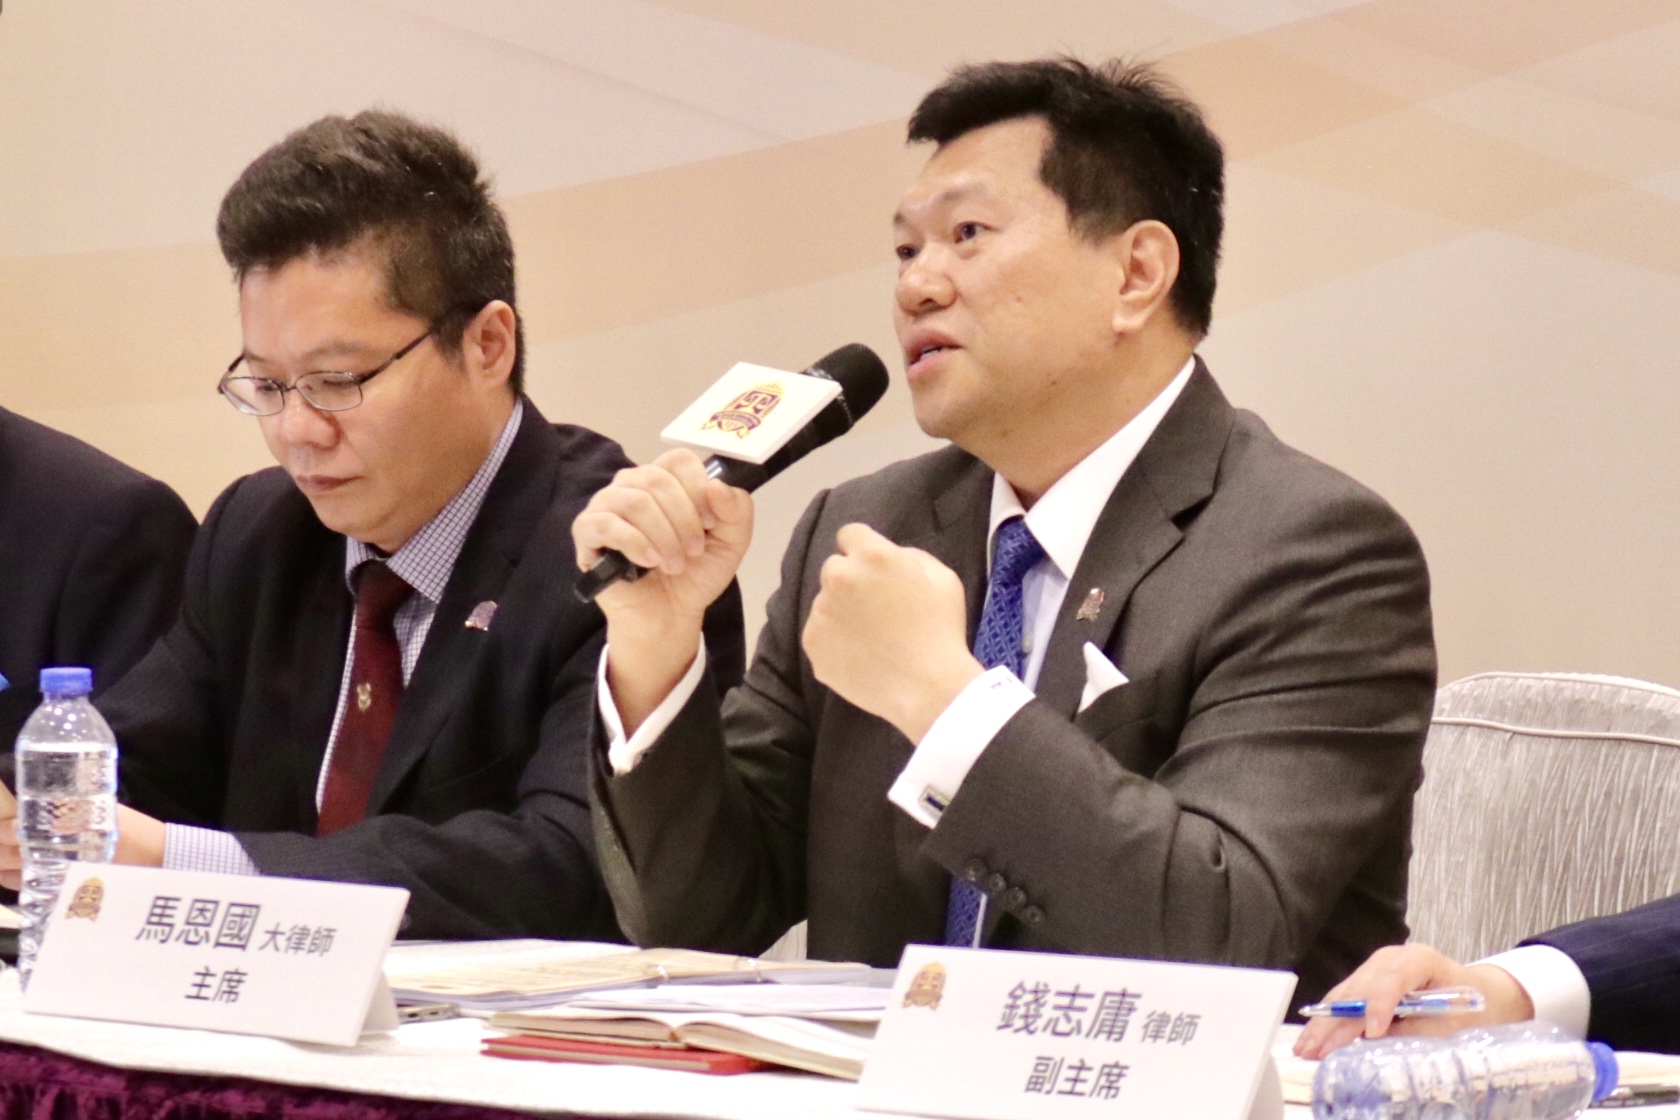 馬恩國(右)表示A普通市民與外國組織或個人正常交流不會觸犯勾結外國勢力C資料圖片